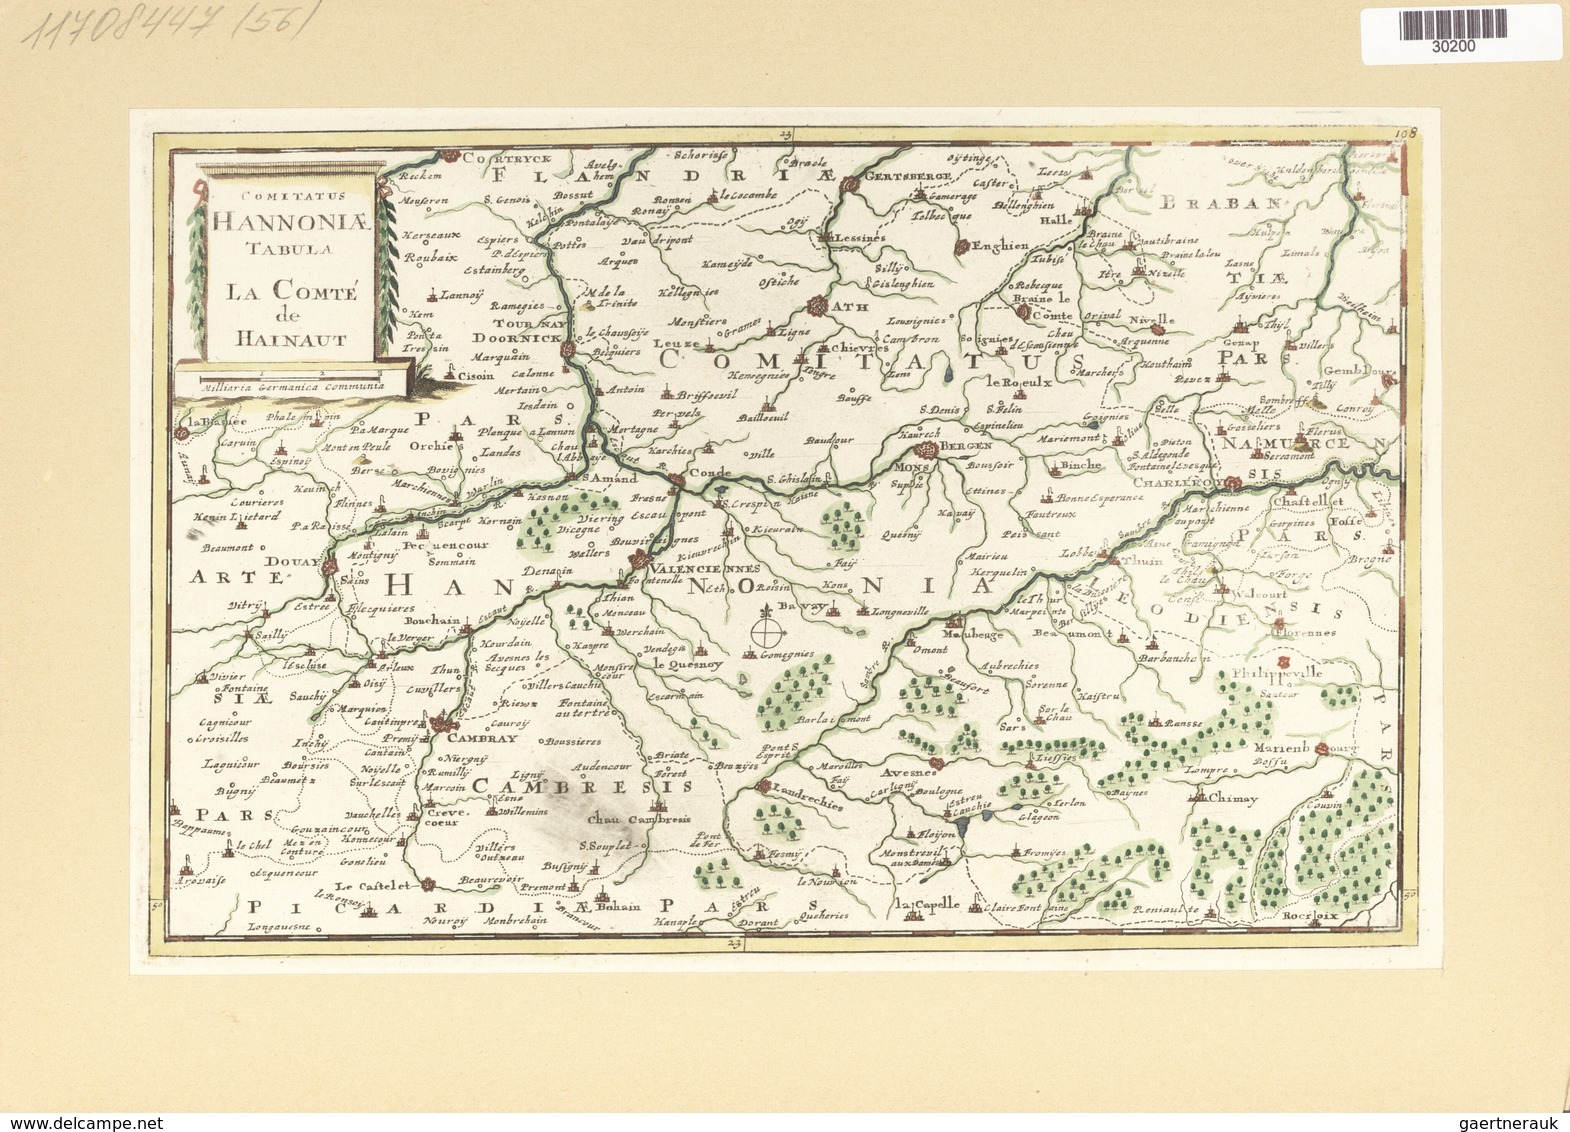 Landkarten Und Stiche: 1734. Comitatus Hannoniae Tablue / La Comte De Hainaut, Published In The Merc - Geography